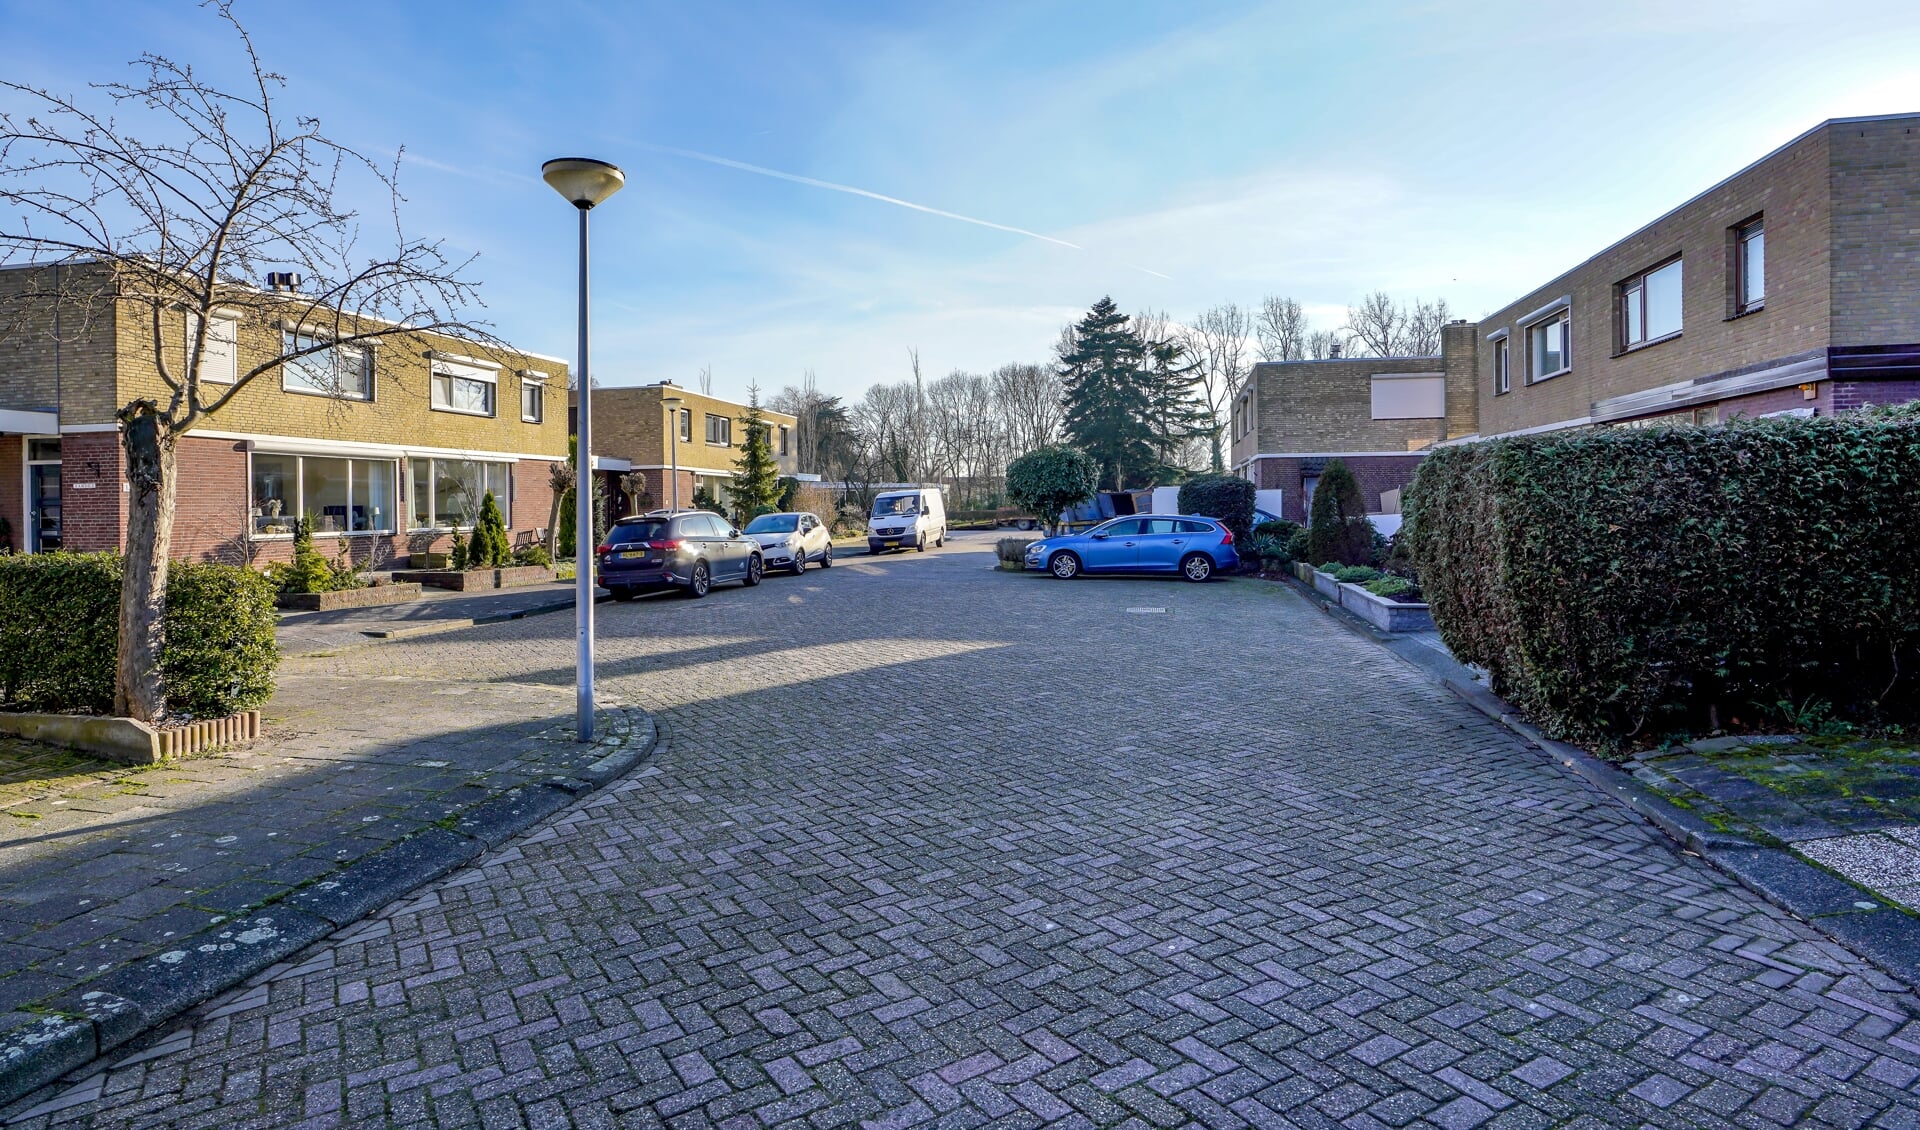 De meeste bewoners willen geen extra woonlaag op de woning van de buren. Foto: Foto-Ok.nl 